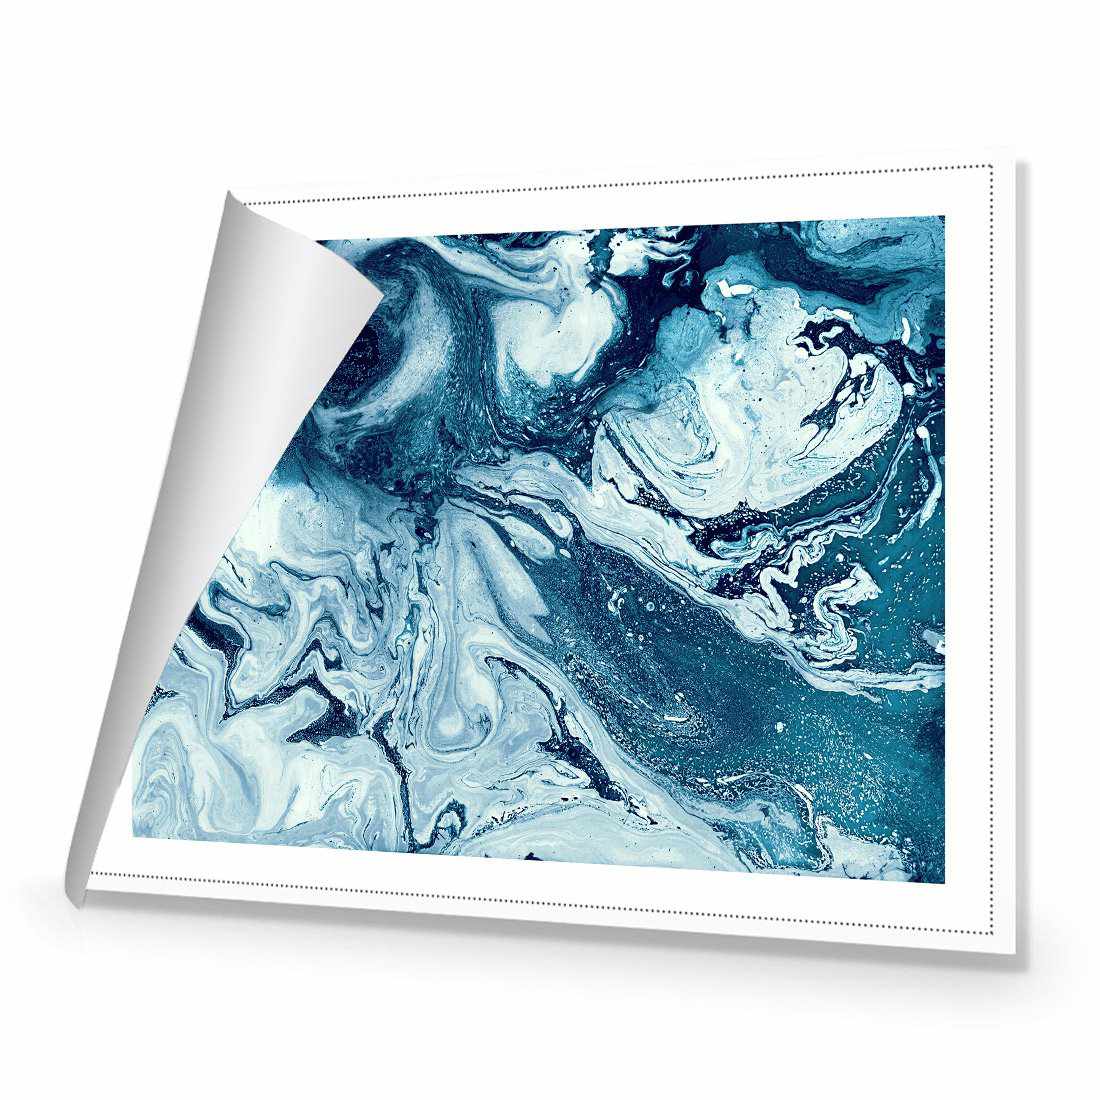 Liquified, Deep Blue Canvas Art-Canvas-Wall Art Designs-45x30cm-Rolled Canvas-Wall Art Designs